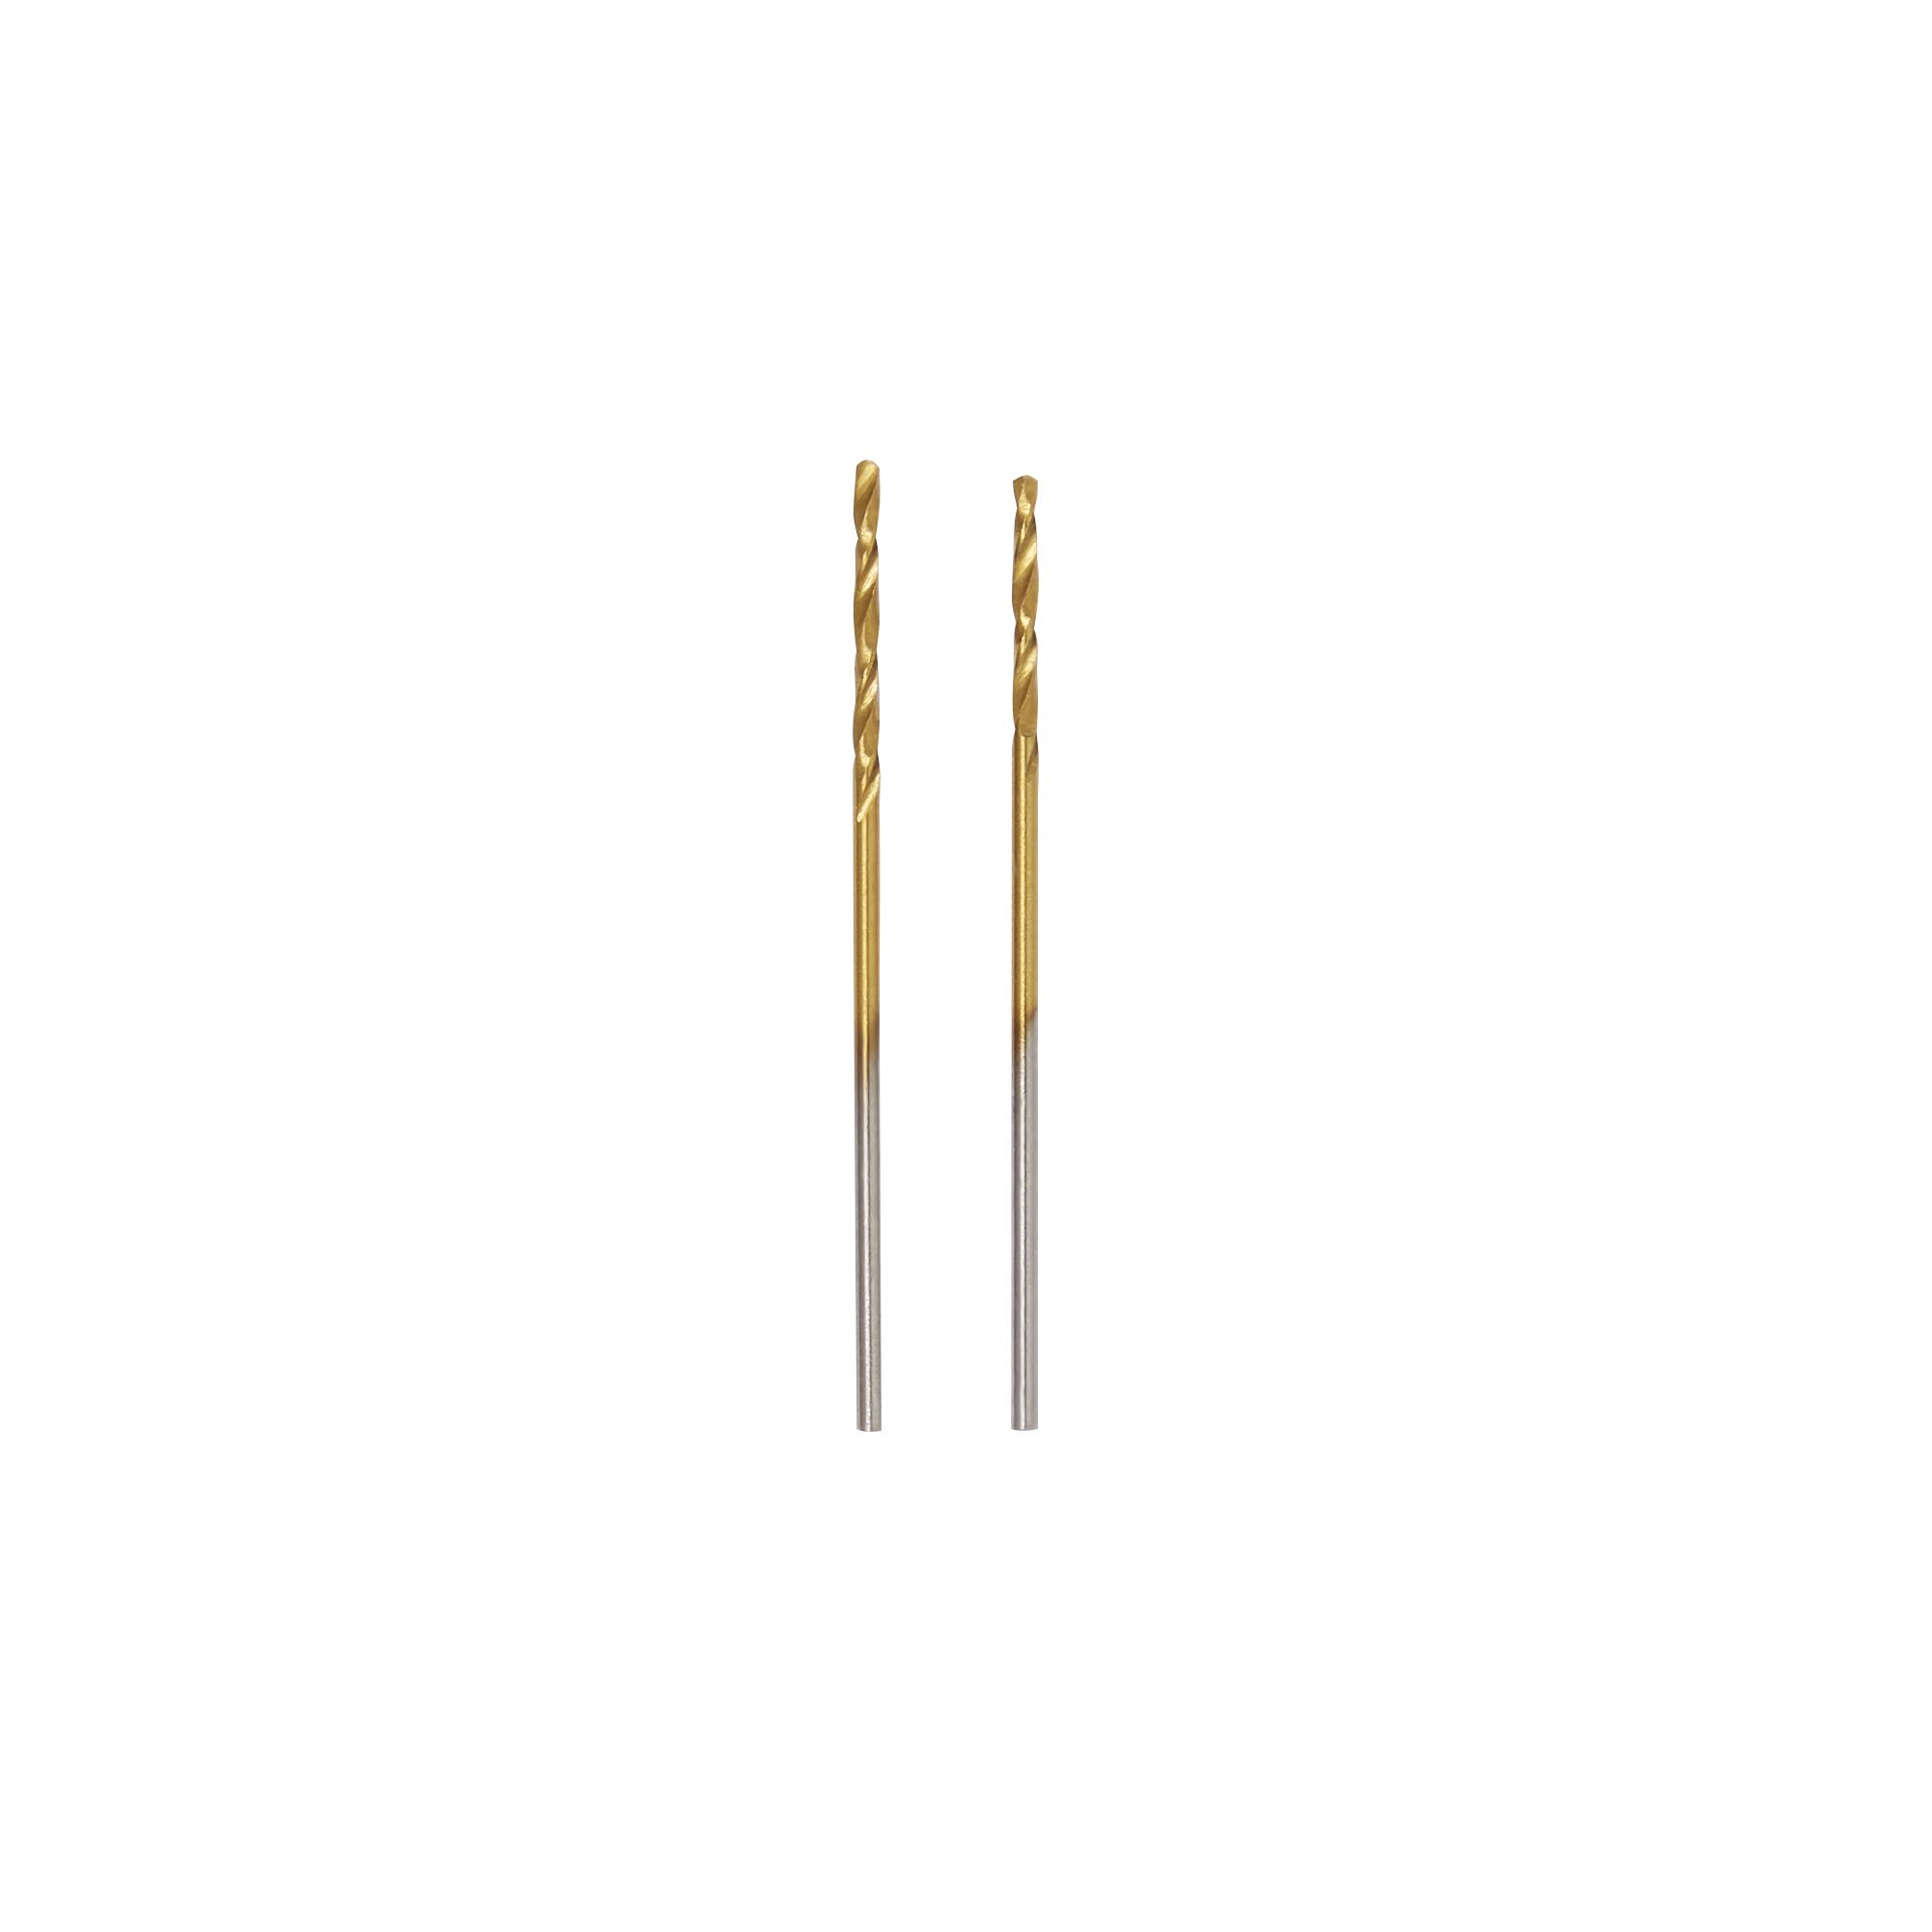 Erbauer Metal Drill bit (Dia)1mm (L)34mm, Pack of 2